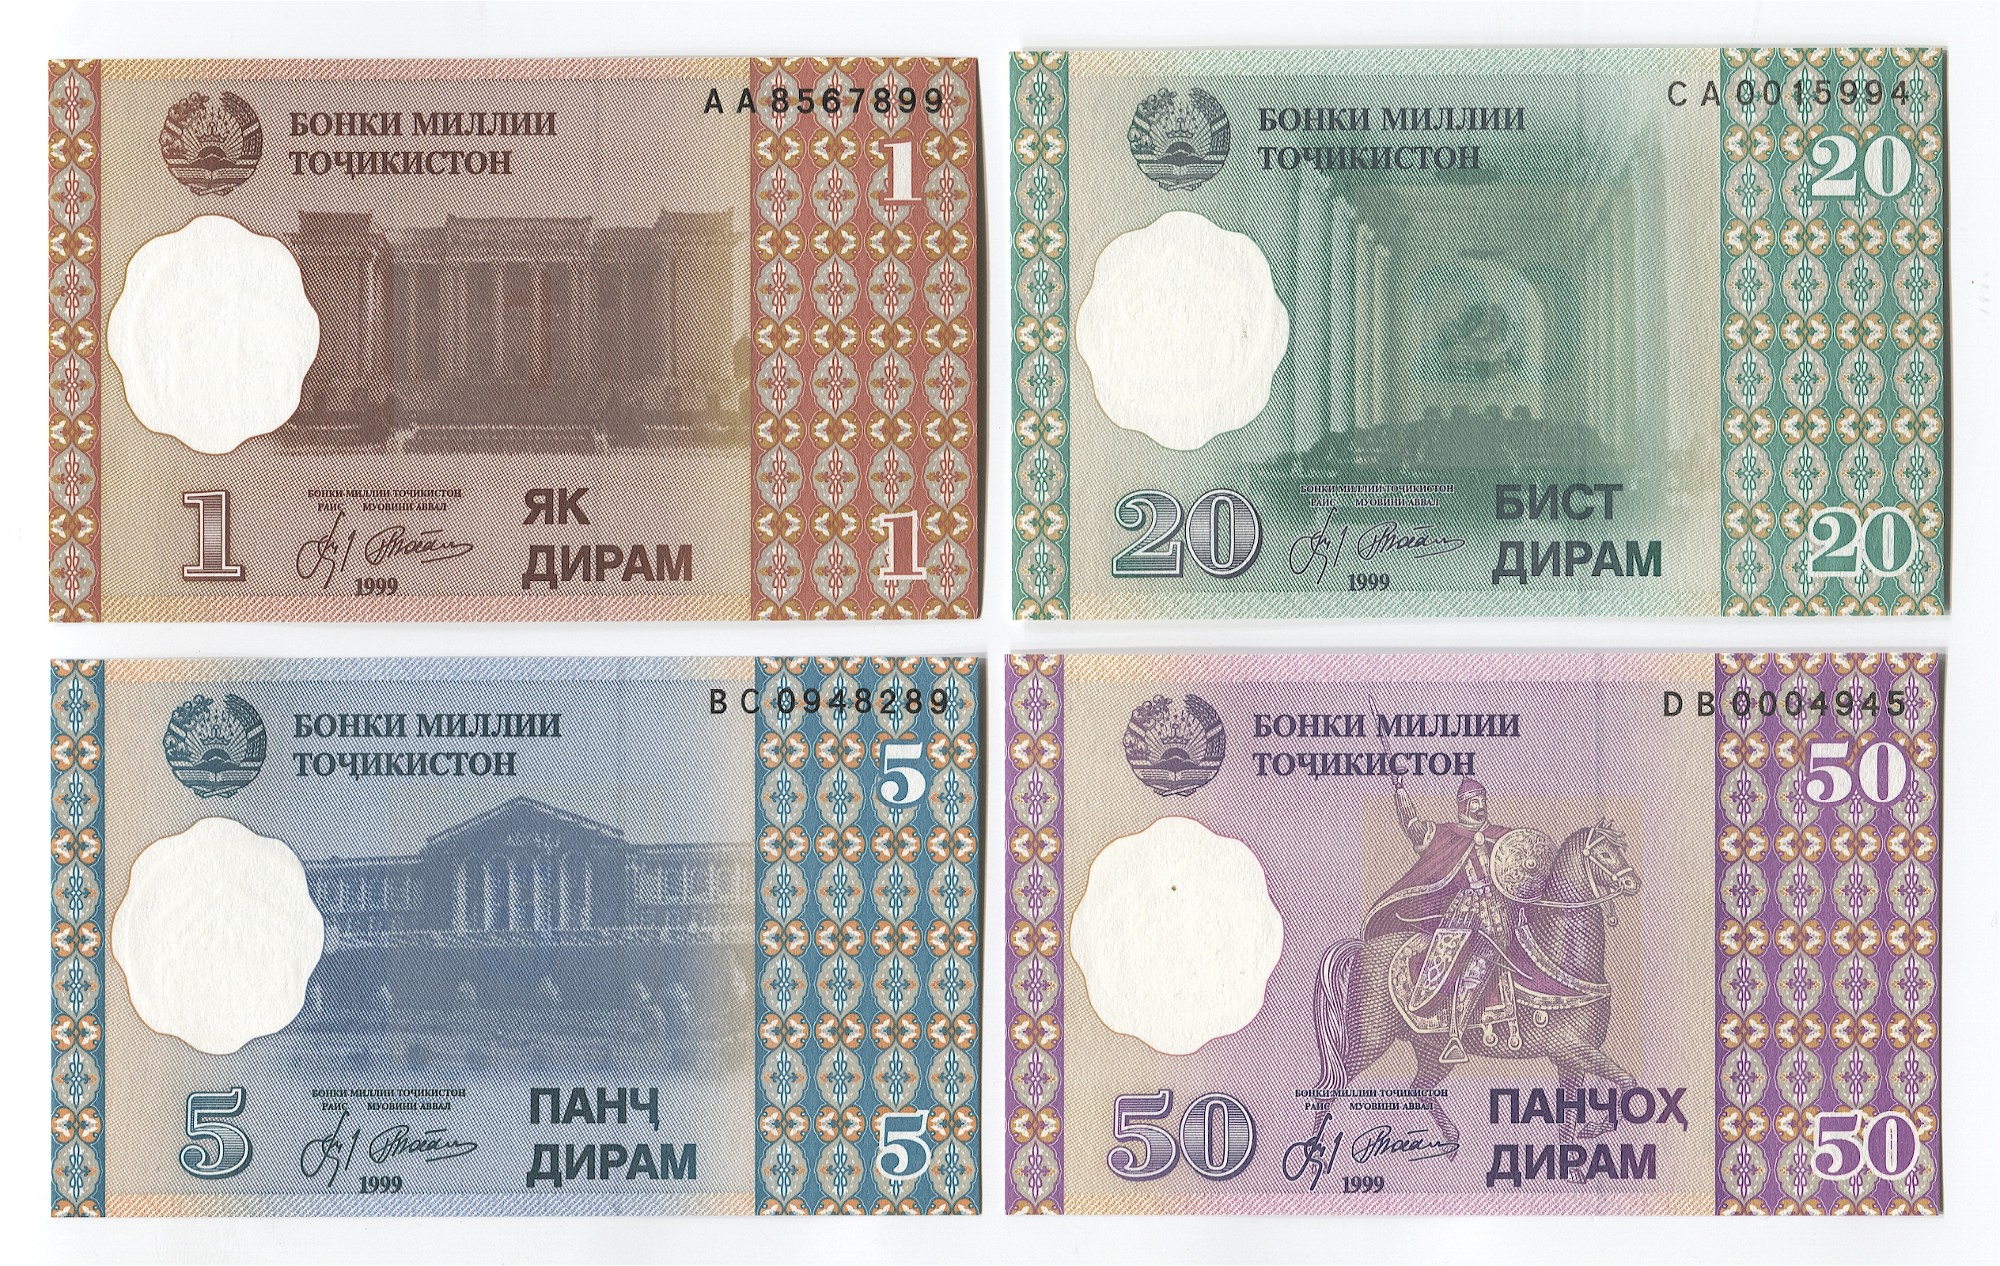 Сум таджикистан. 50 Дирам 1999 Таджикистана. Таджикистан 20 дирам 1999 год пресс UNC. Банкнота Таджикистан 20 дирам 1999. Купюра Таджикистан 1 дирам 1999.